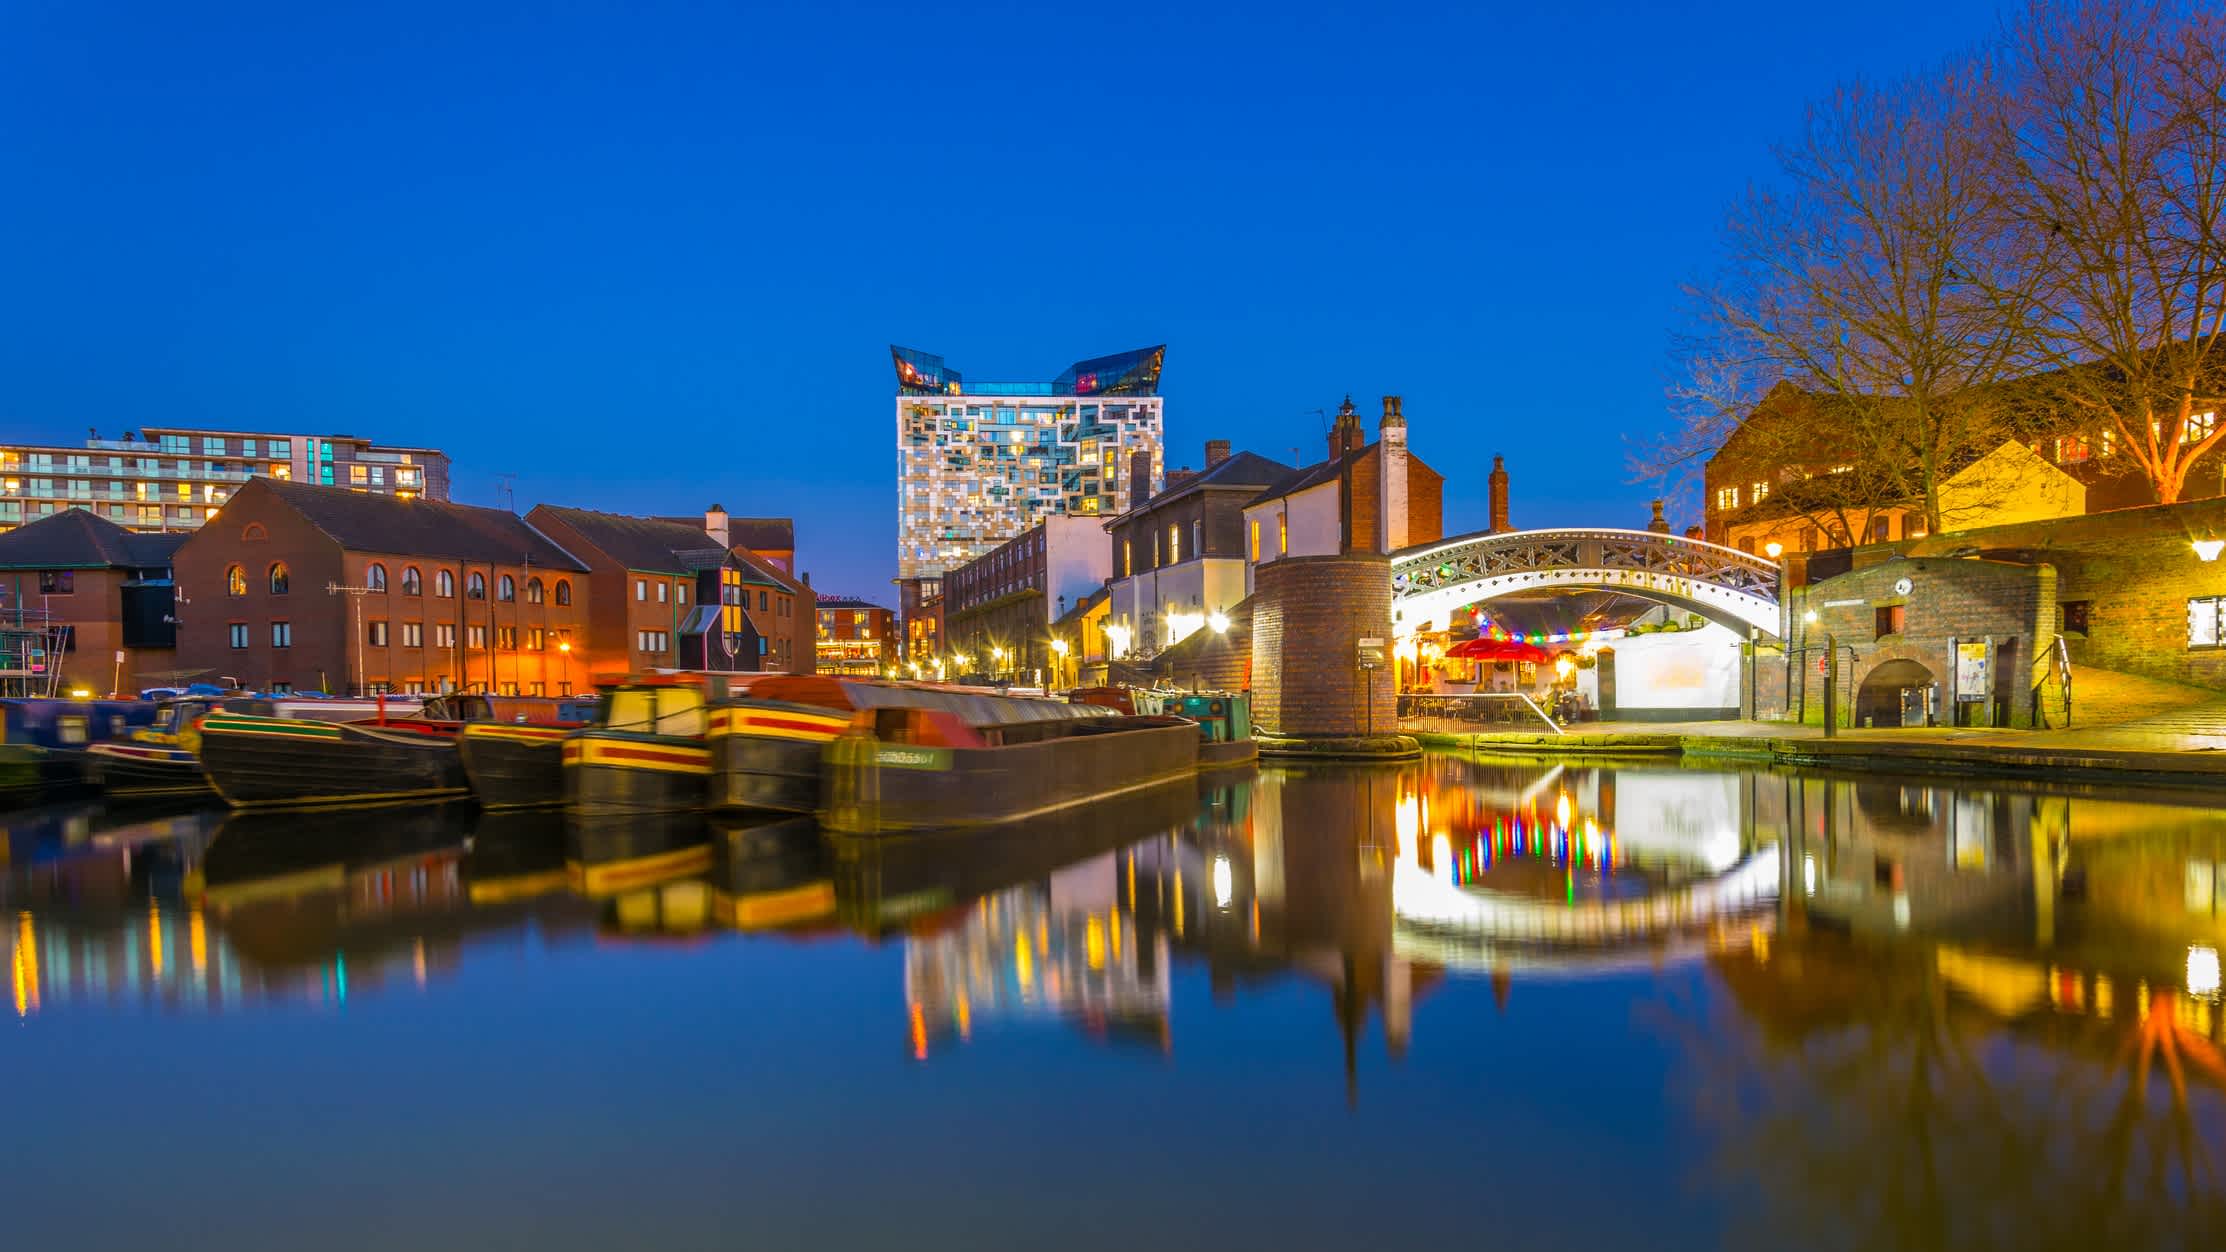 Der Wasserkanal in das Zentrum von Birmingham am Abend, England.

